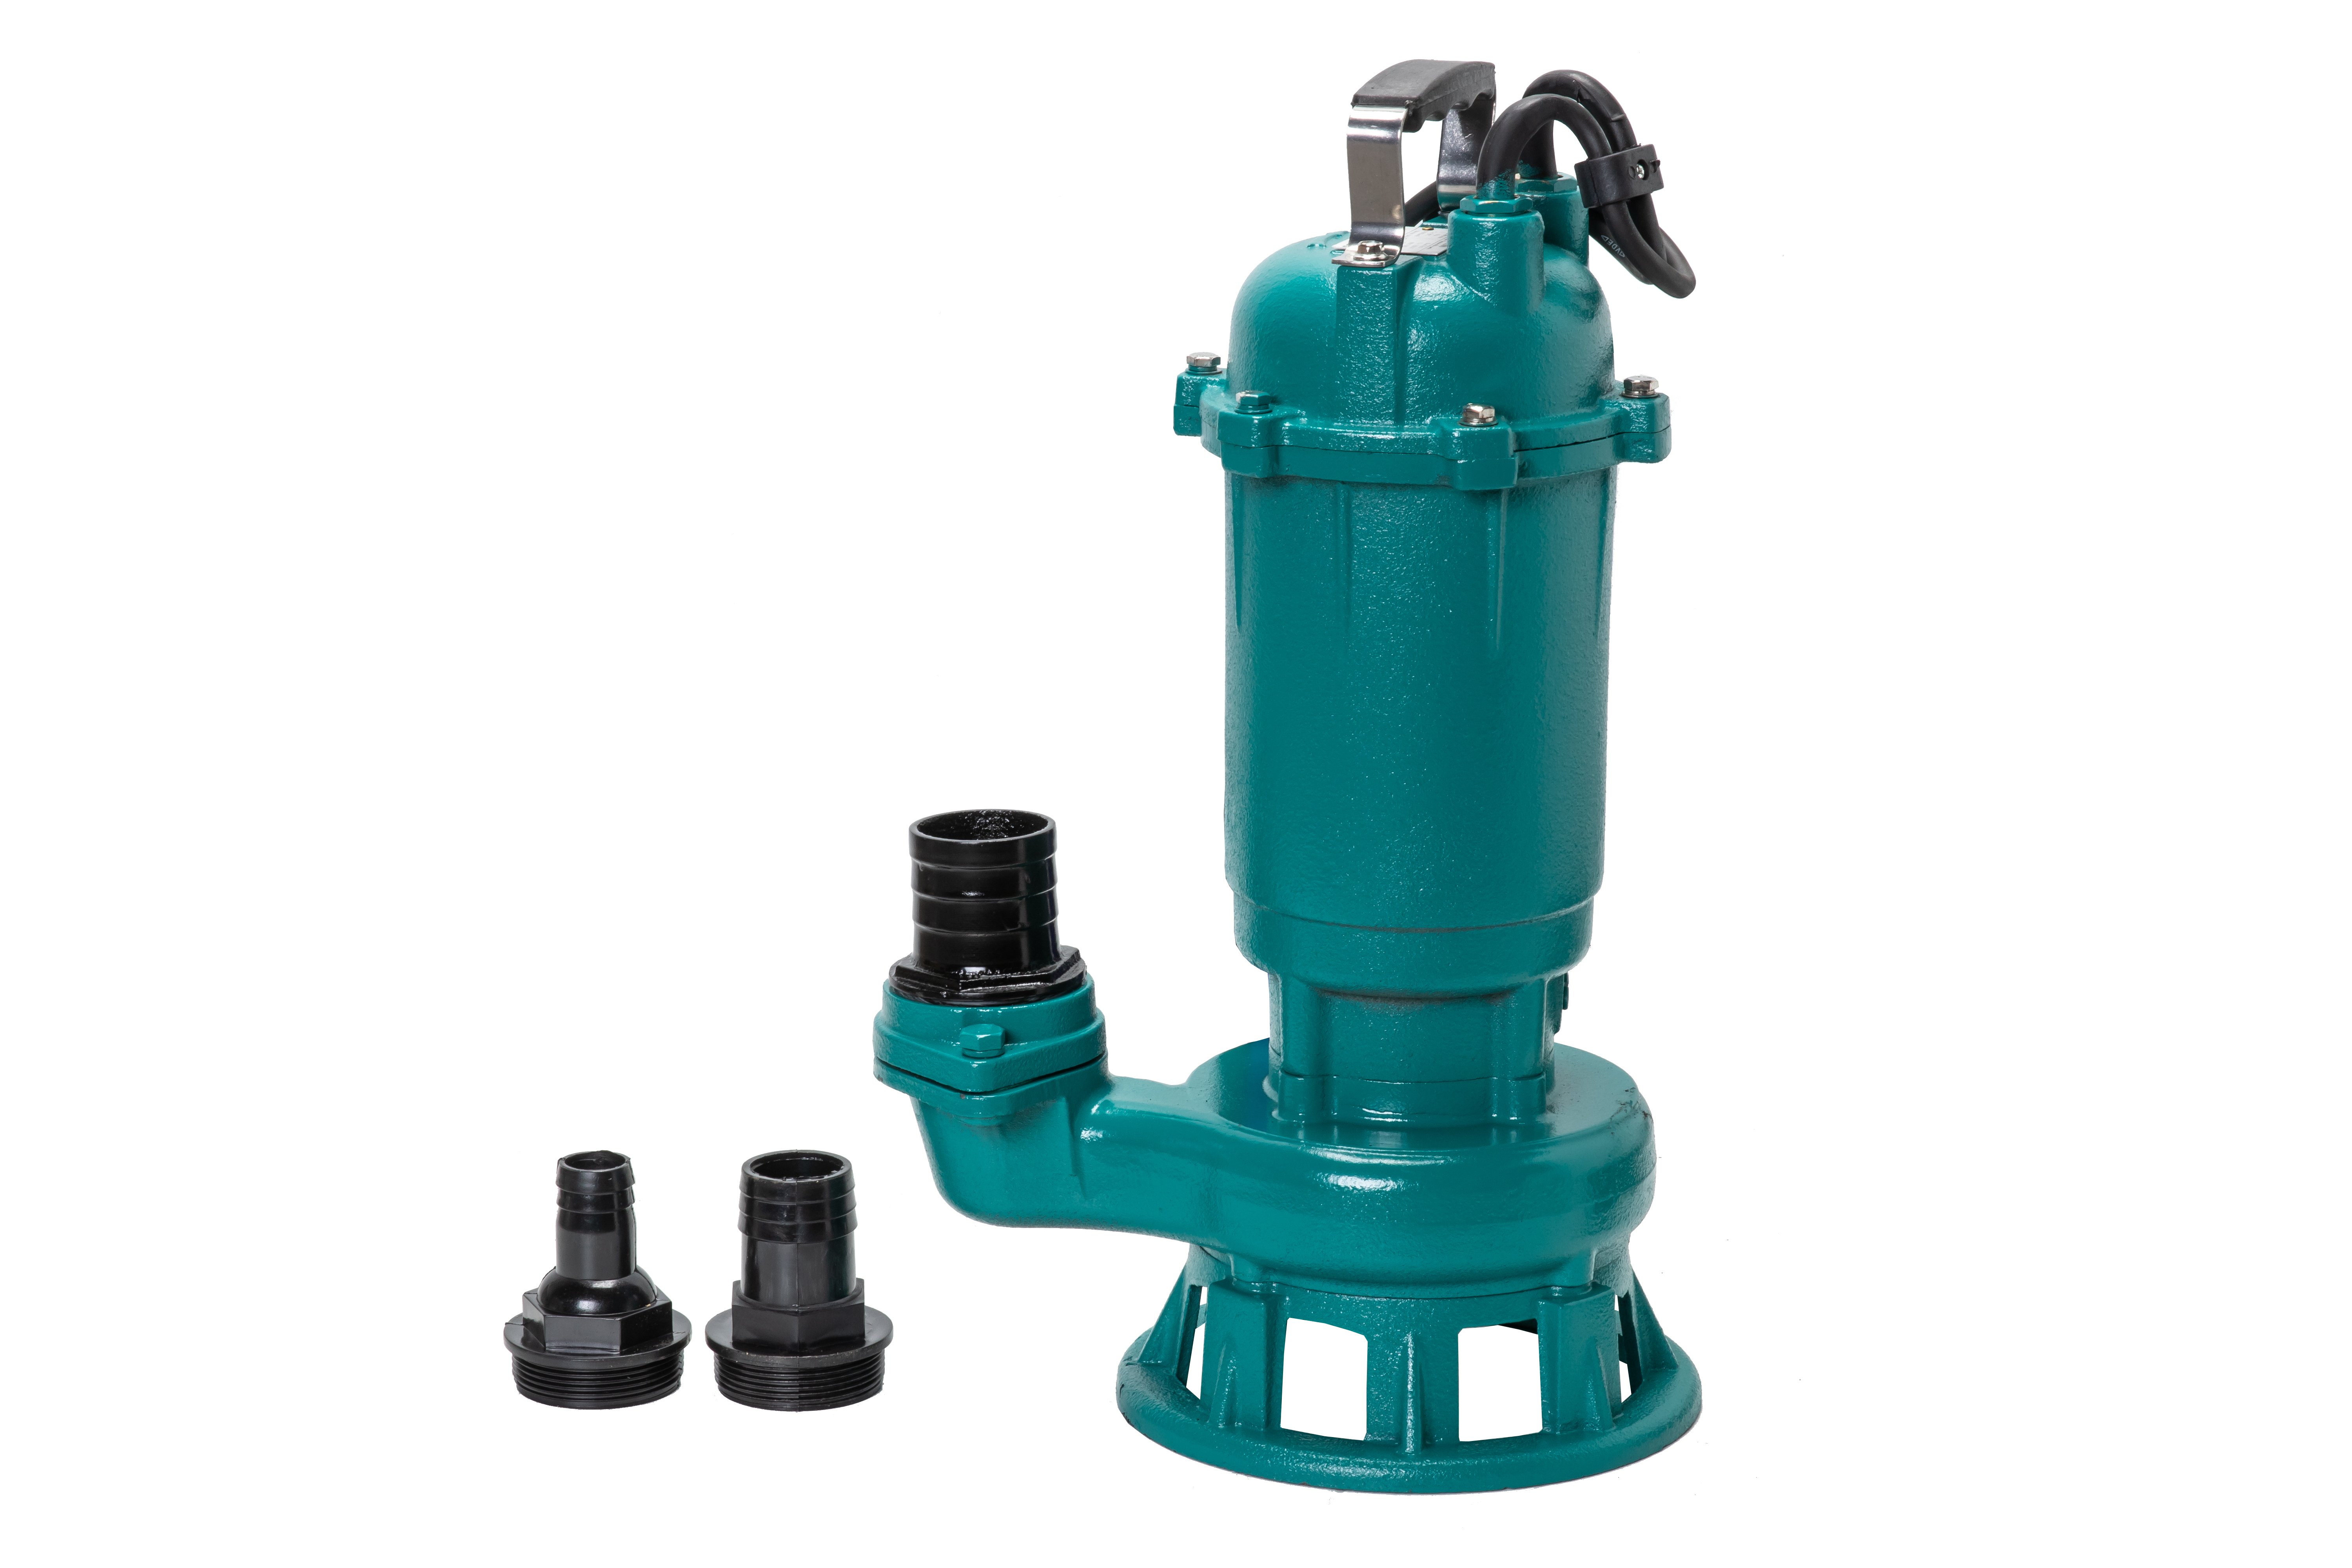 Fäkalienpumpe Schmutzwasserpumpe Tauchpumpe 550W 250l/min - 2  Storzkupplung + 20m C-Schlauch, Schmutzwasser- / Tauchpumpen, Pumpen